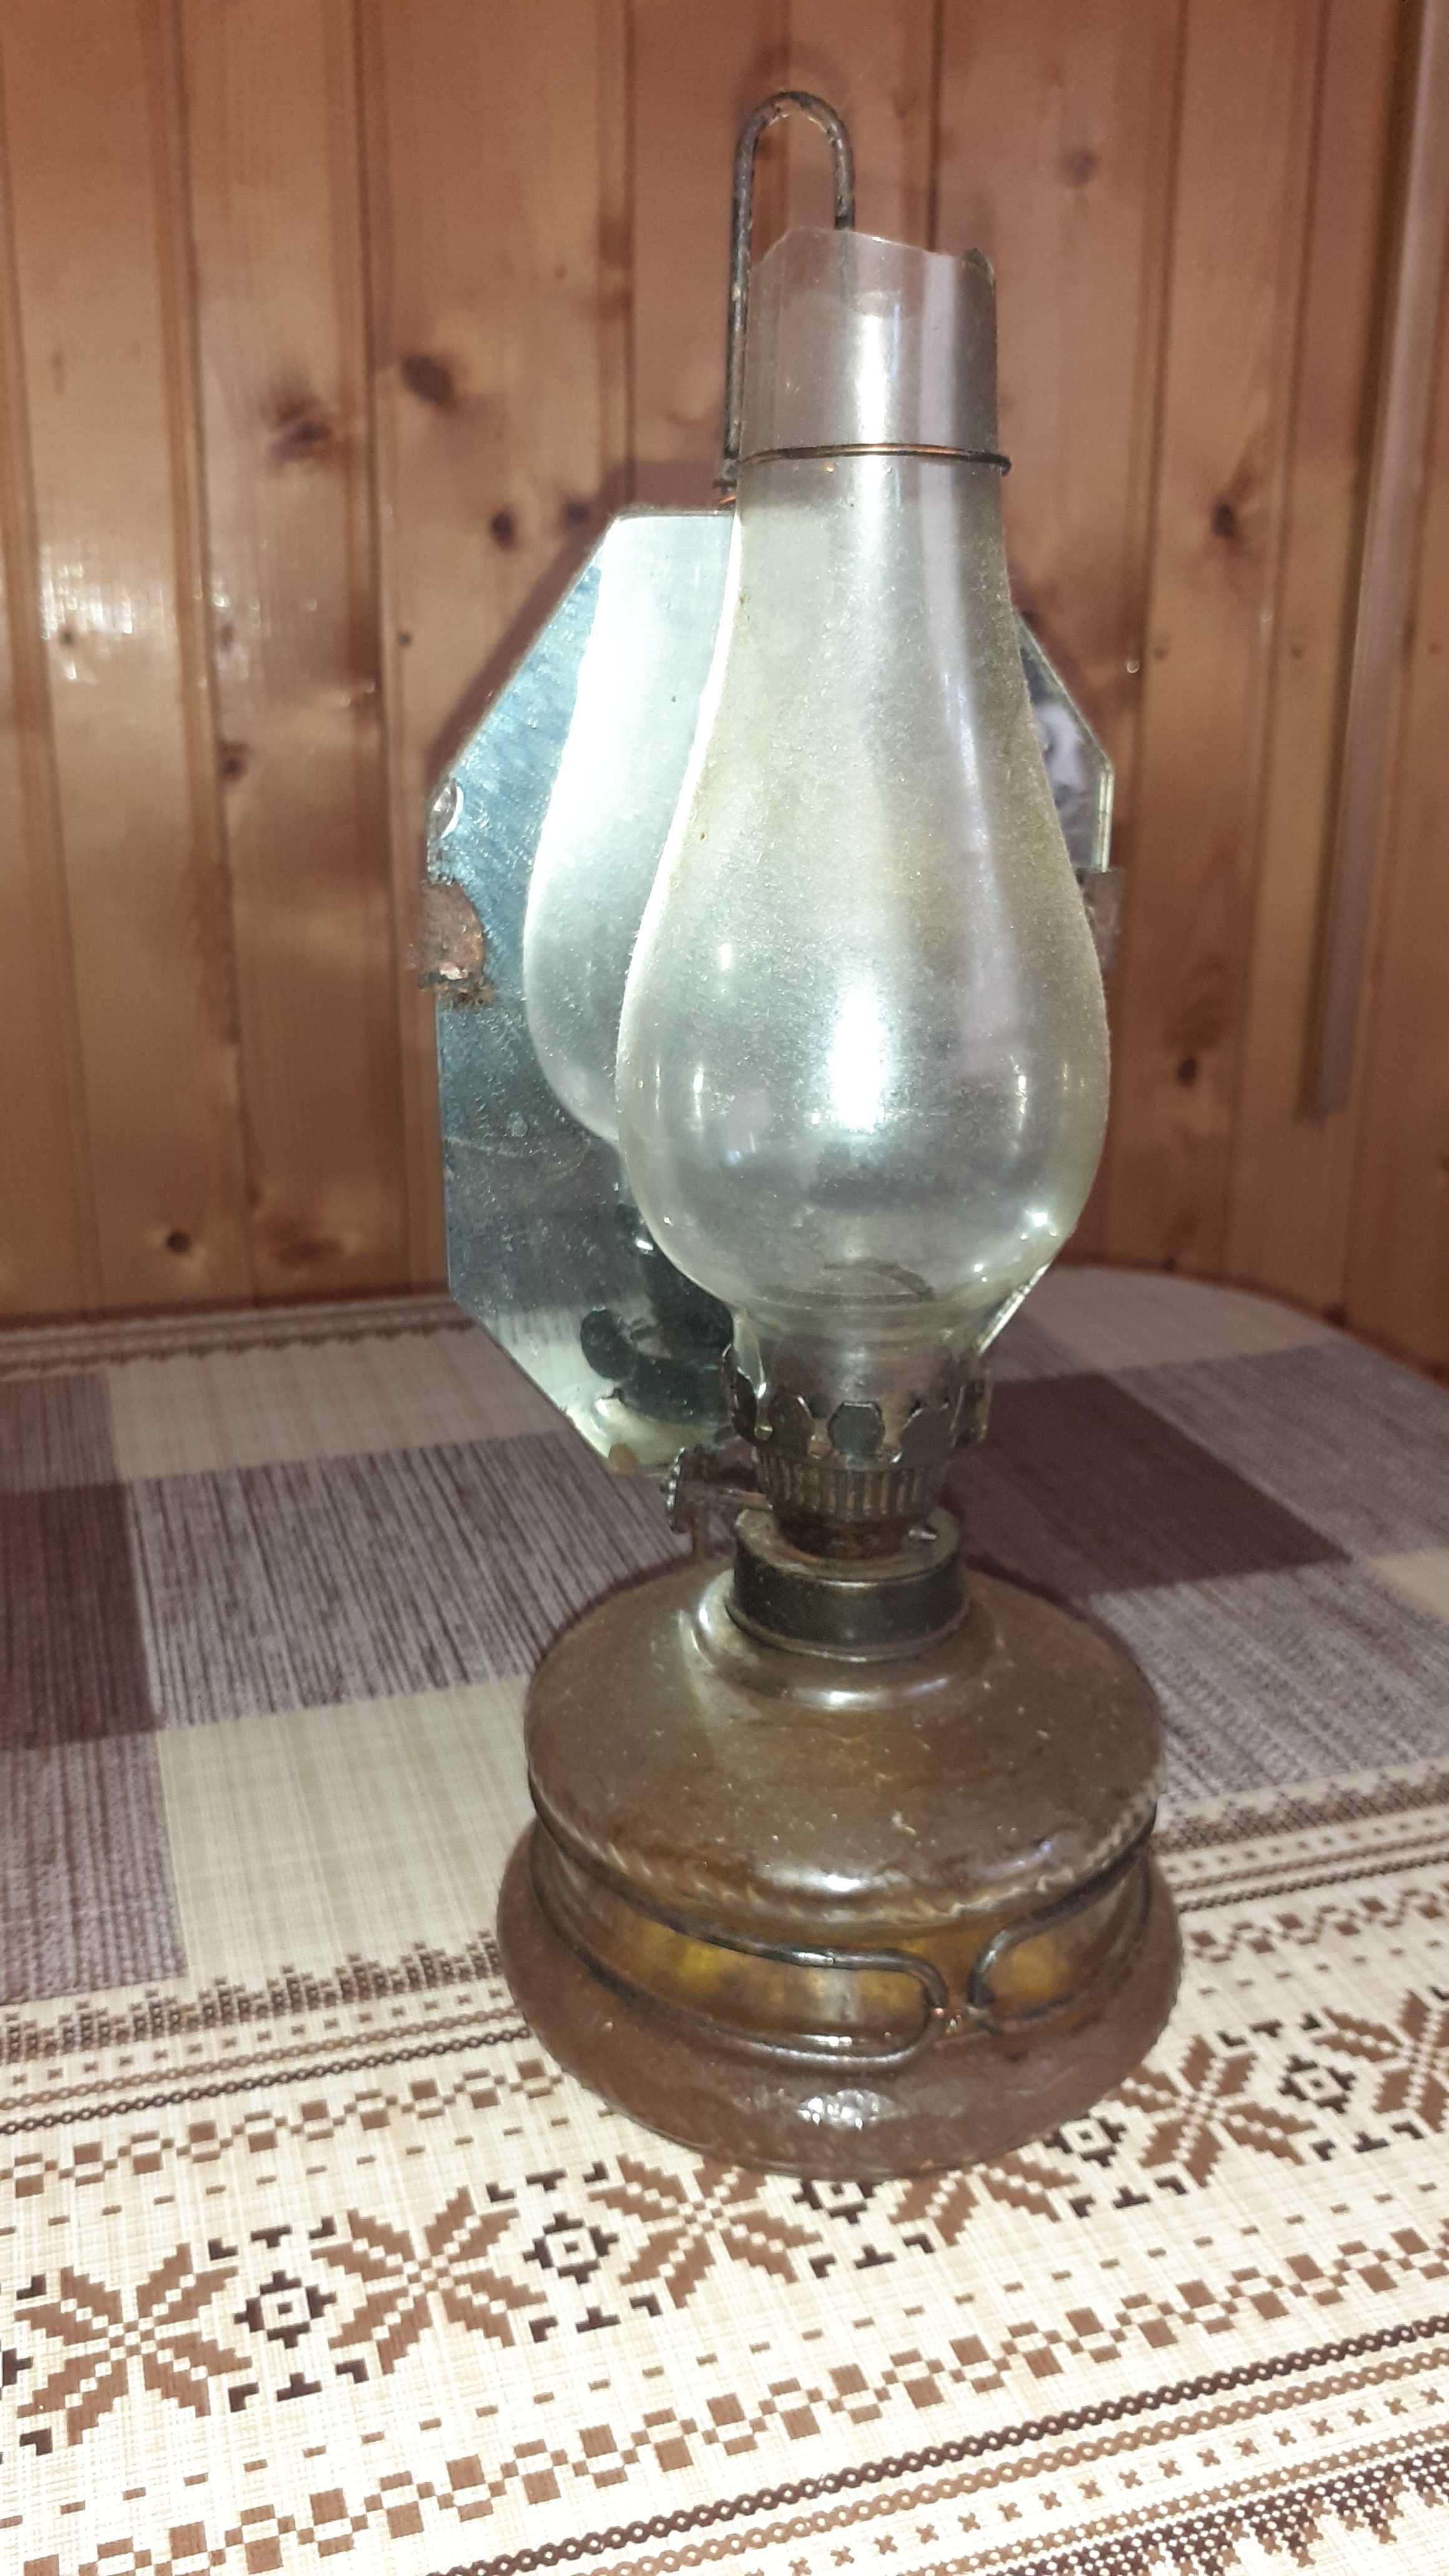 Lampa veche- petrol lampant cu fitil